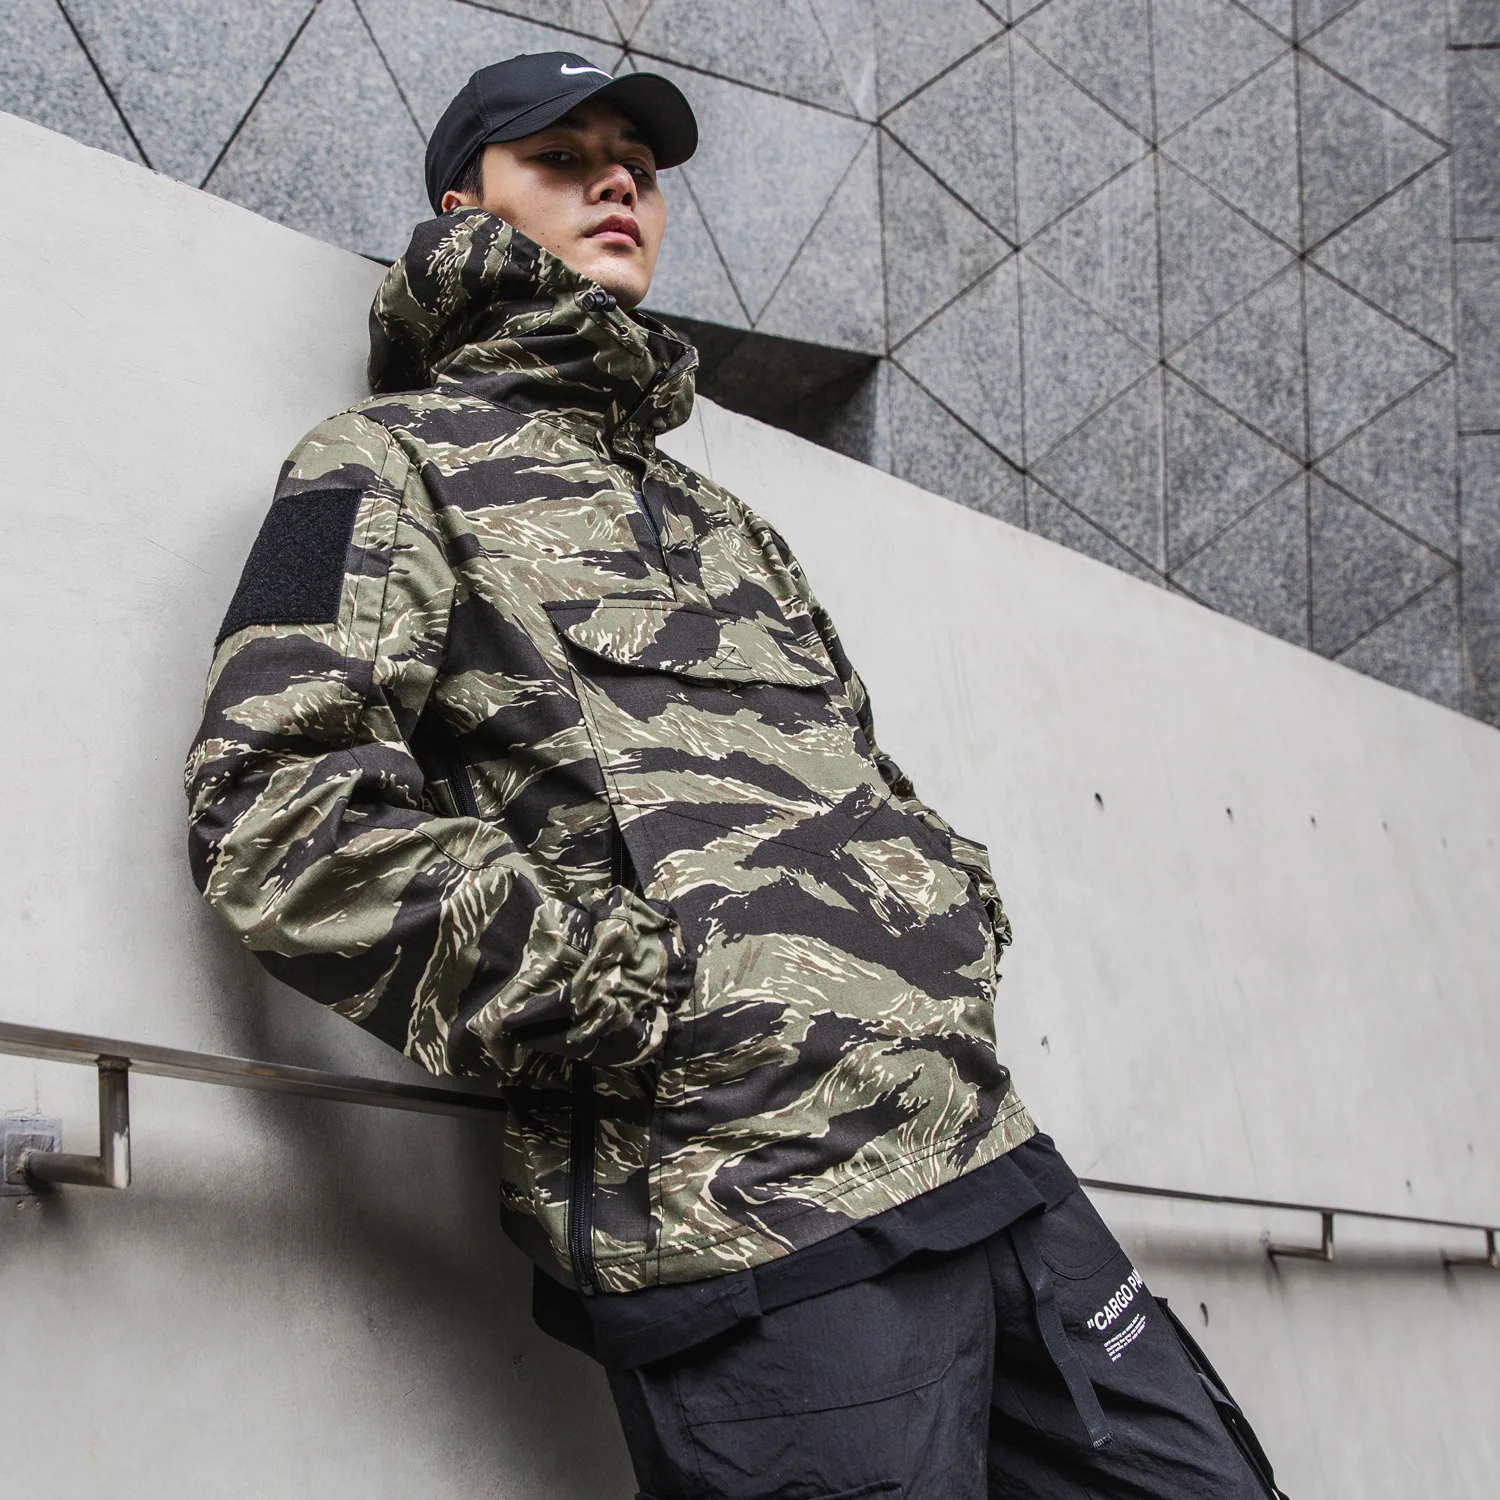 

Chief Camouflage Smock Outdoor Tactical Combat Uniform Autumn Winter New Coat Men's Overalls Camouflage Jacket